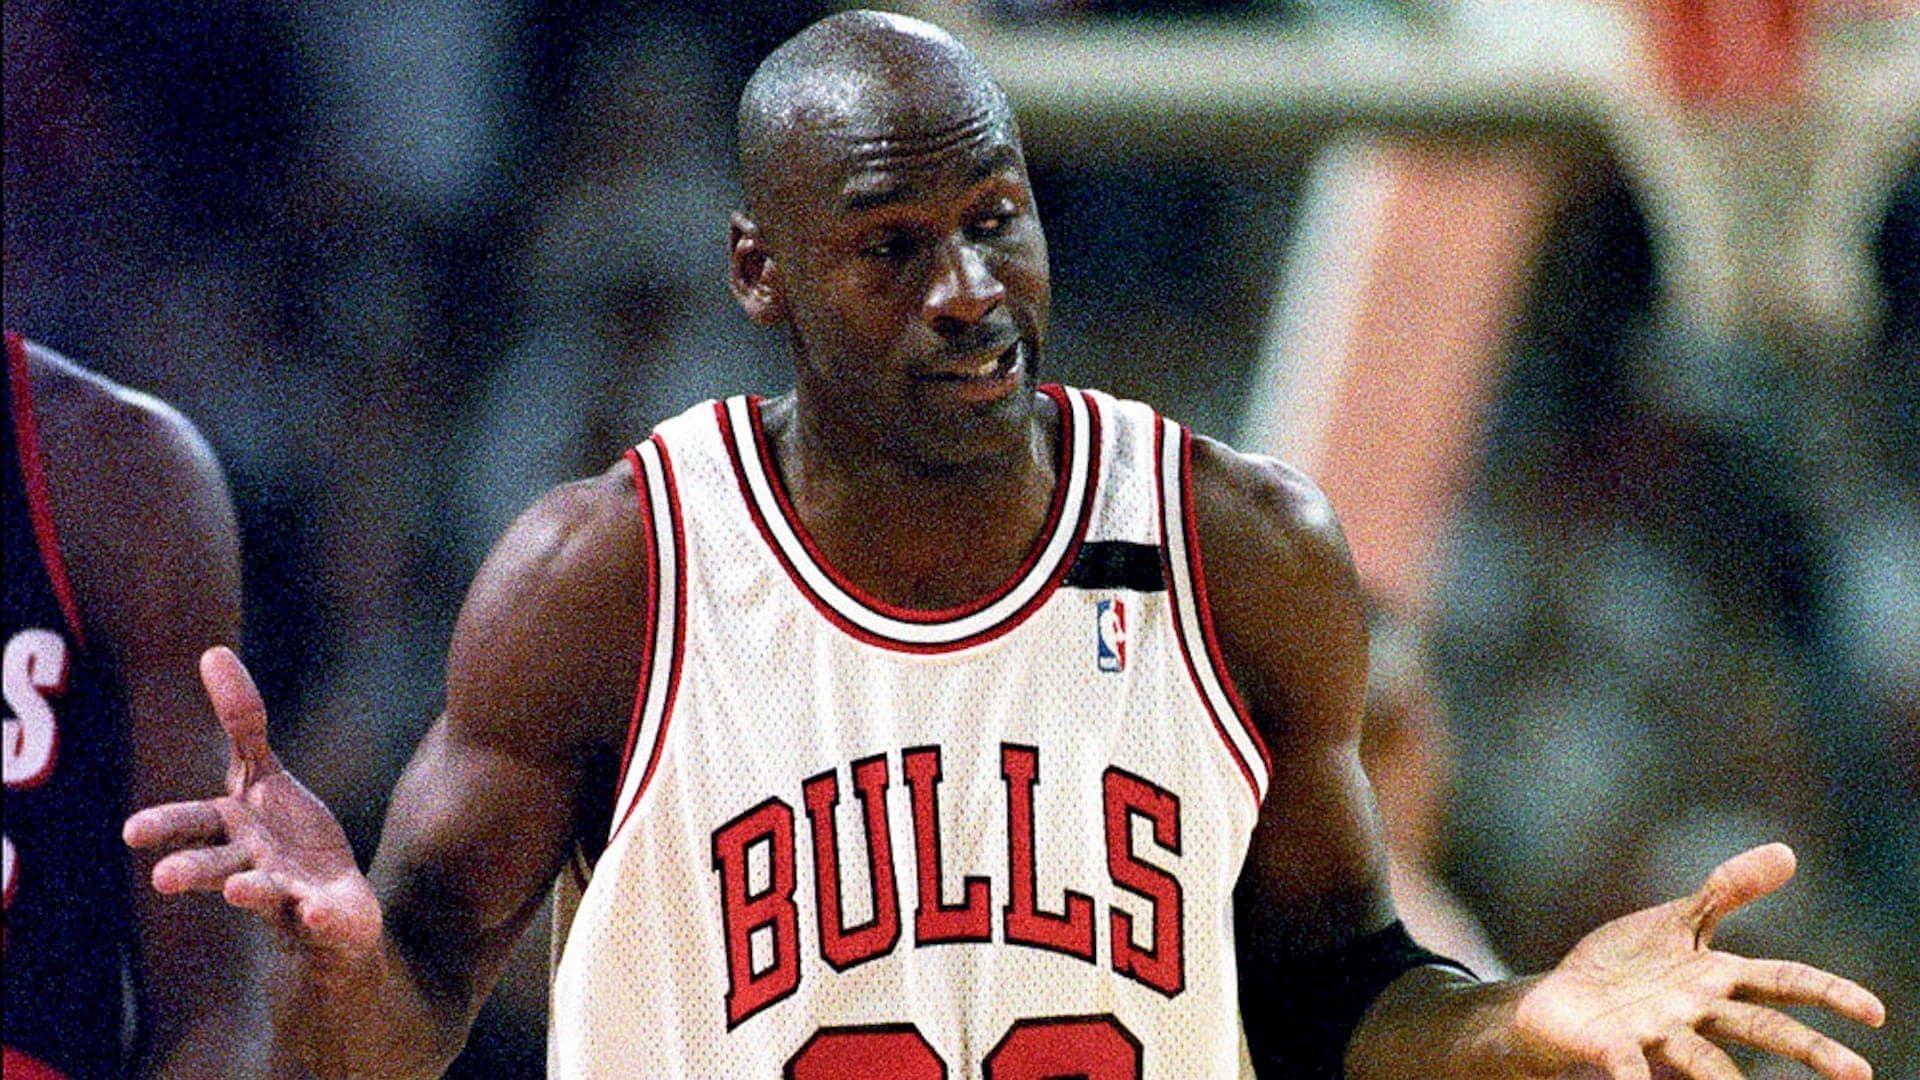 Michael Jordan in Game 1 of the 1992 NBA Finals